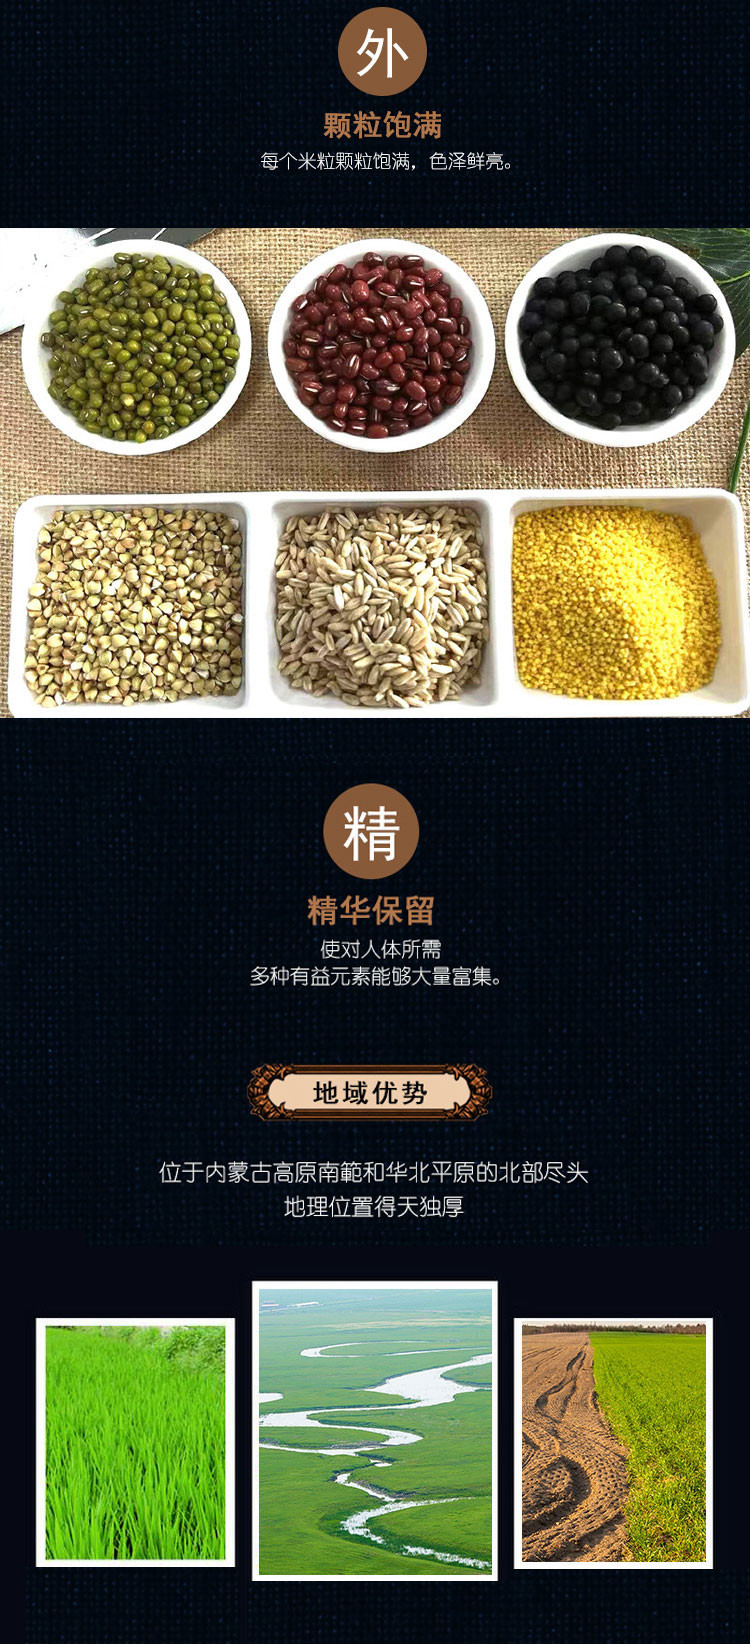 坝莜域 甄选杂粮礼盒3kg米豆组合